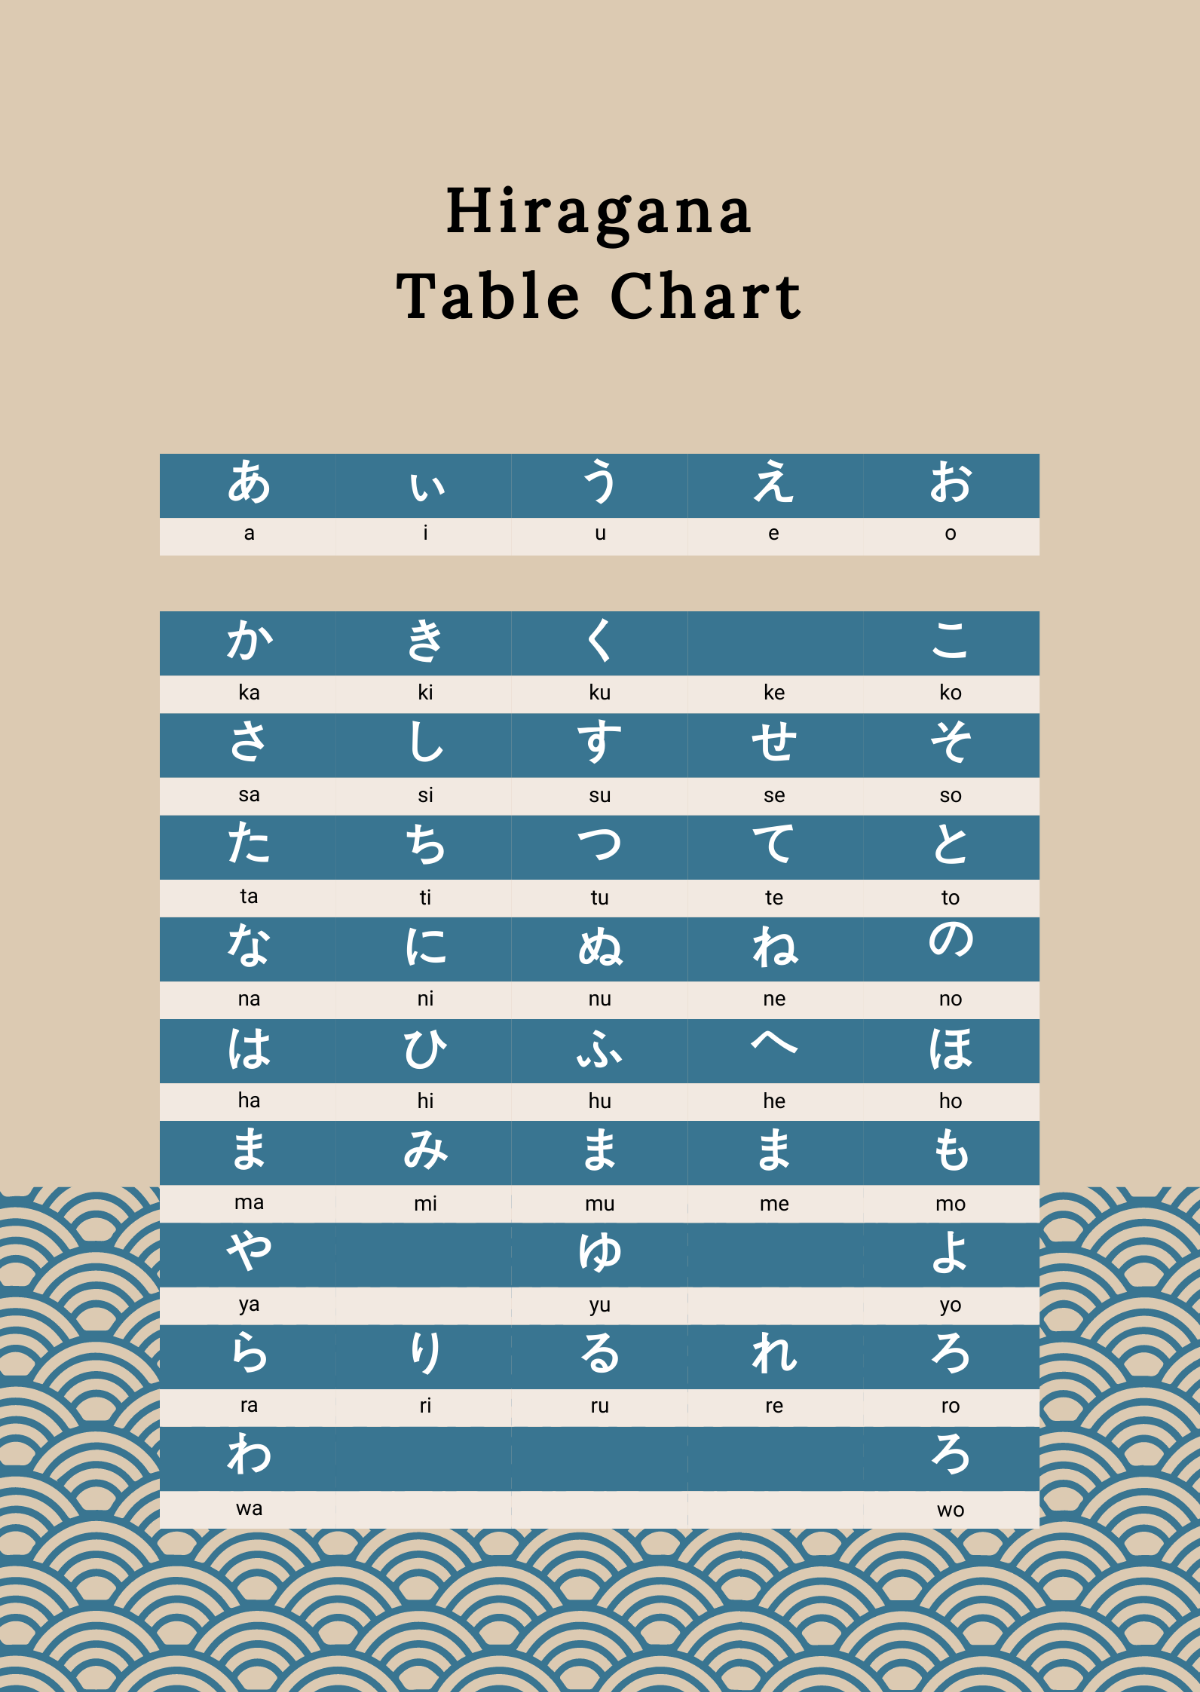 Hiragana Table Chart Template